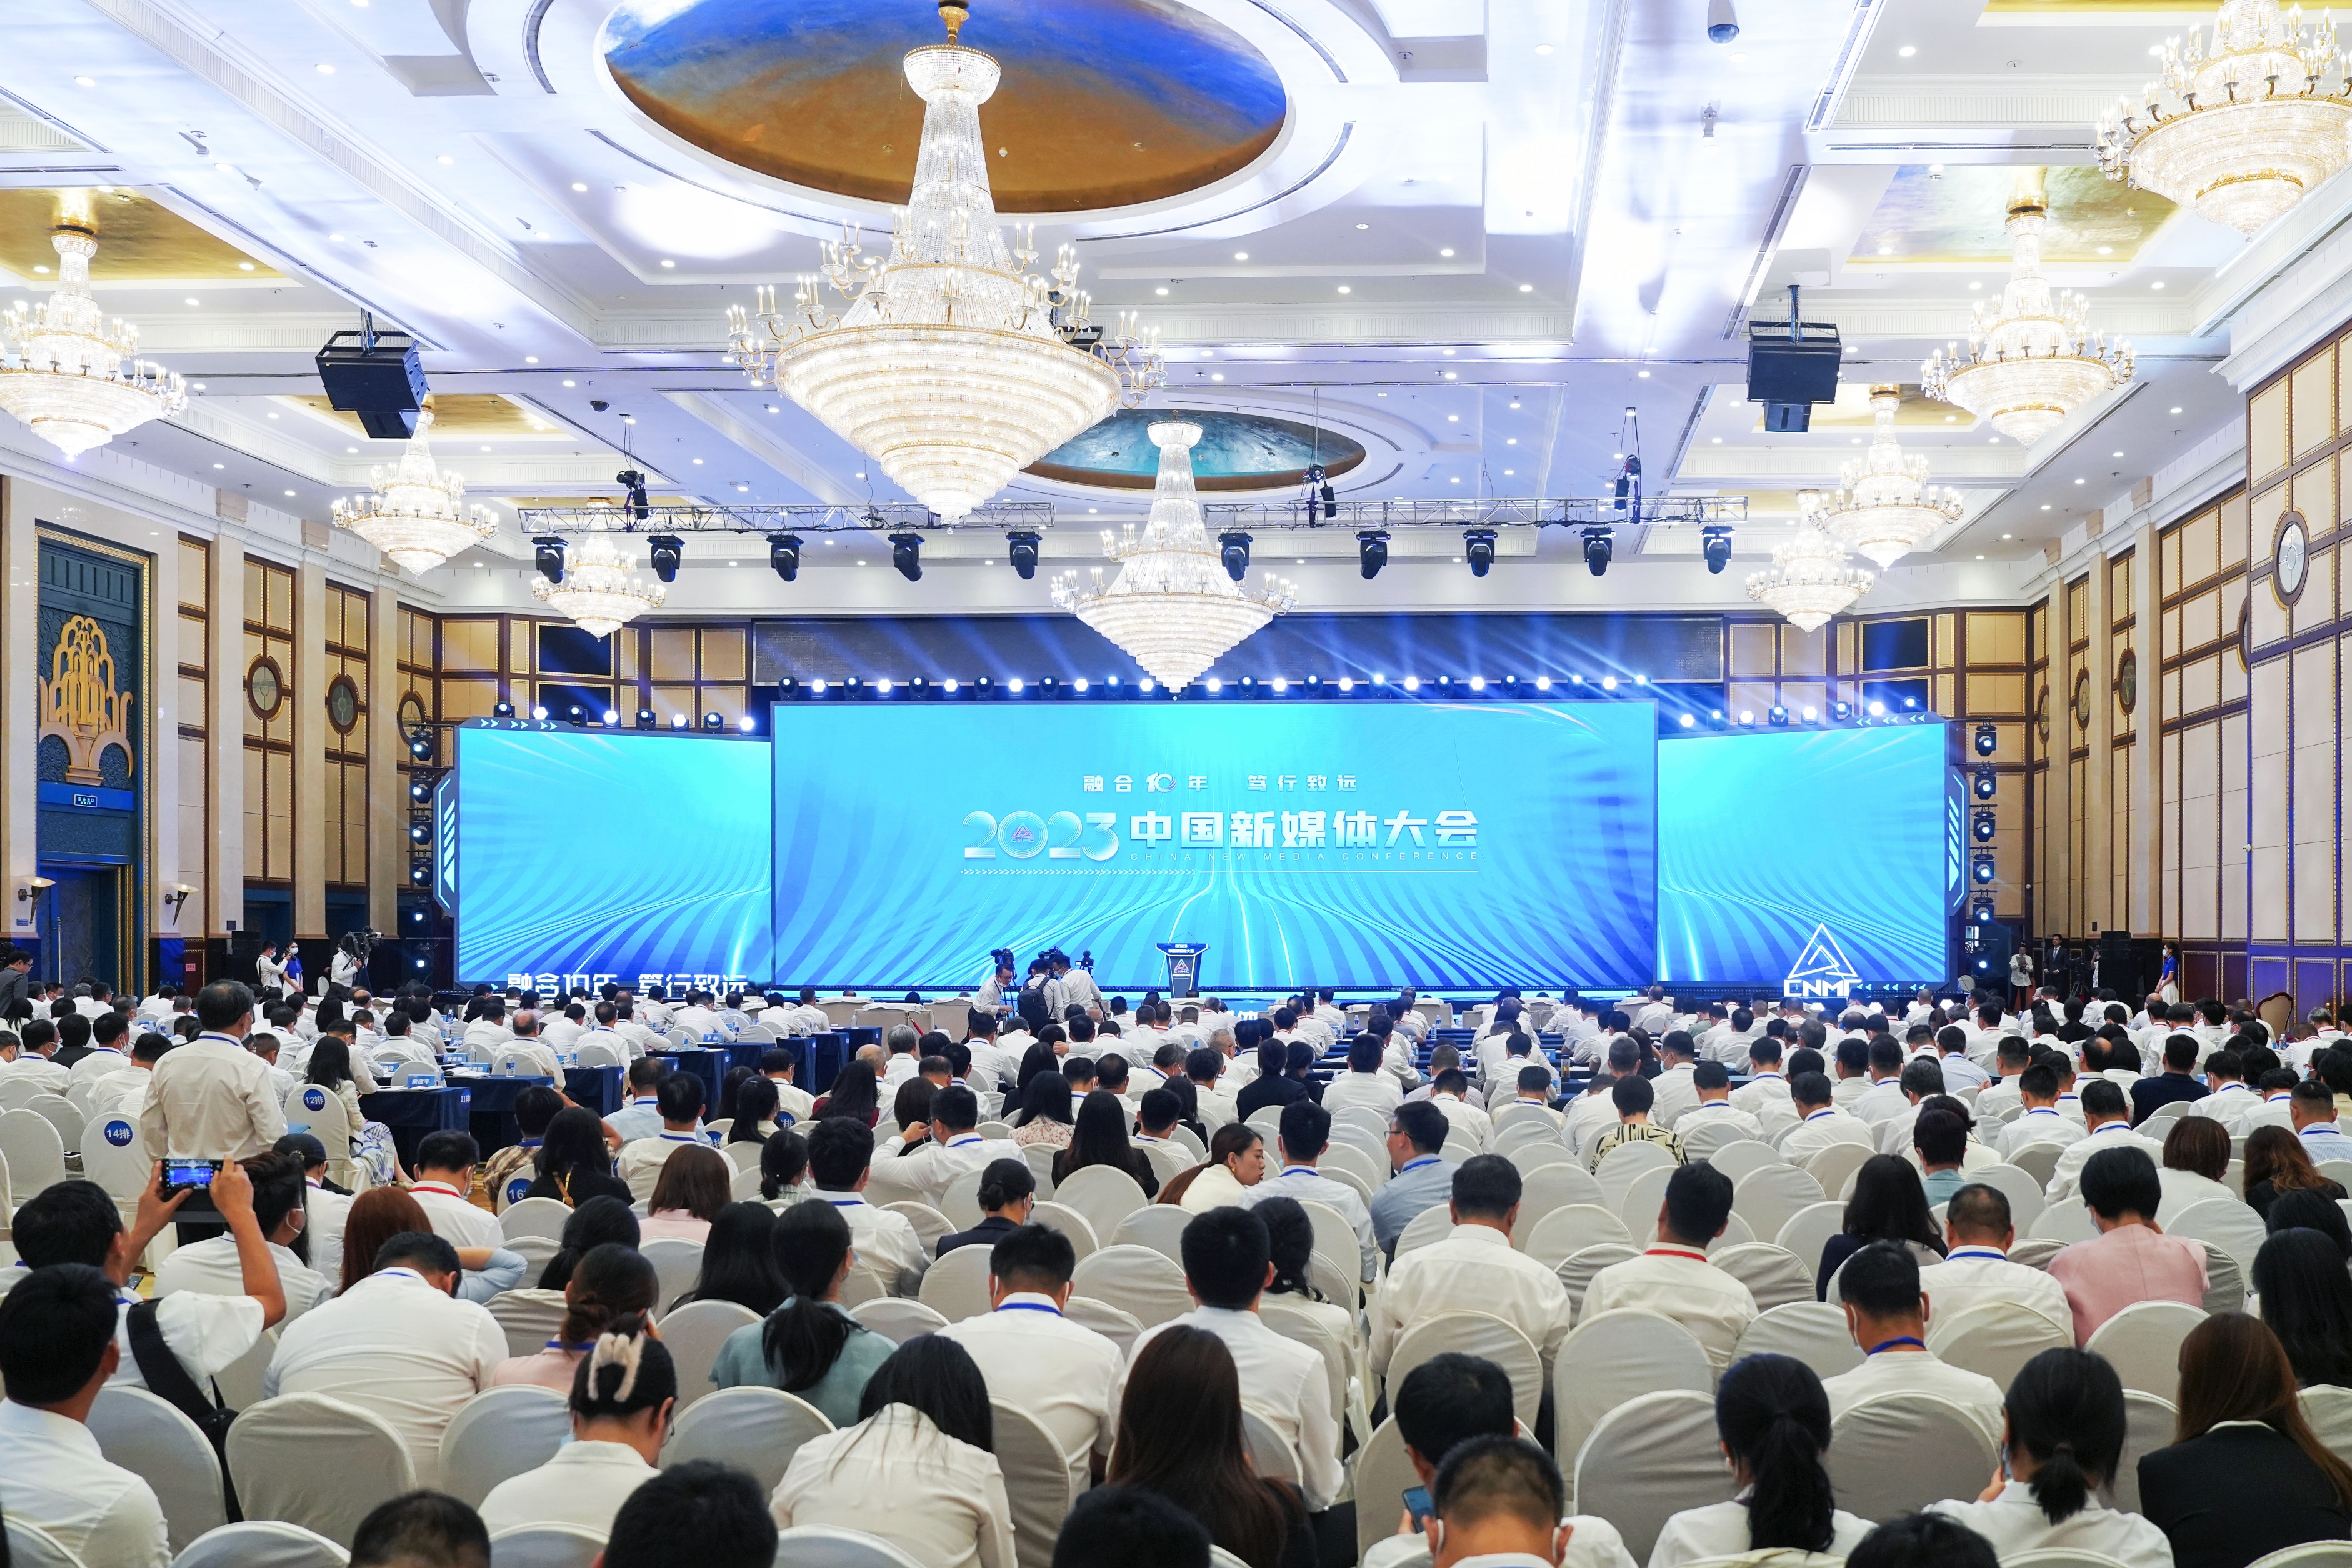 2023中国新媒体大会在湖南省长沙市举行 李书磊出席并发表主旨演讲